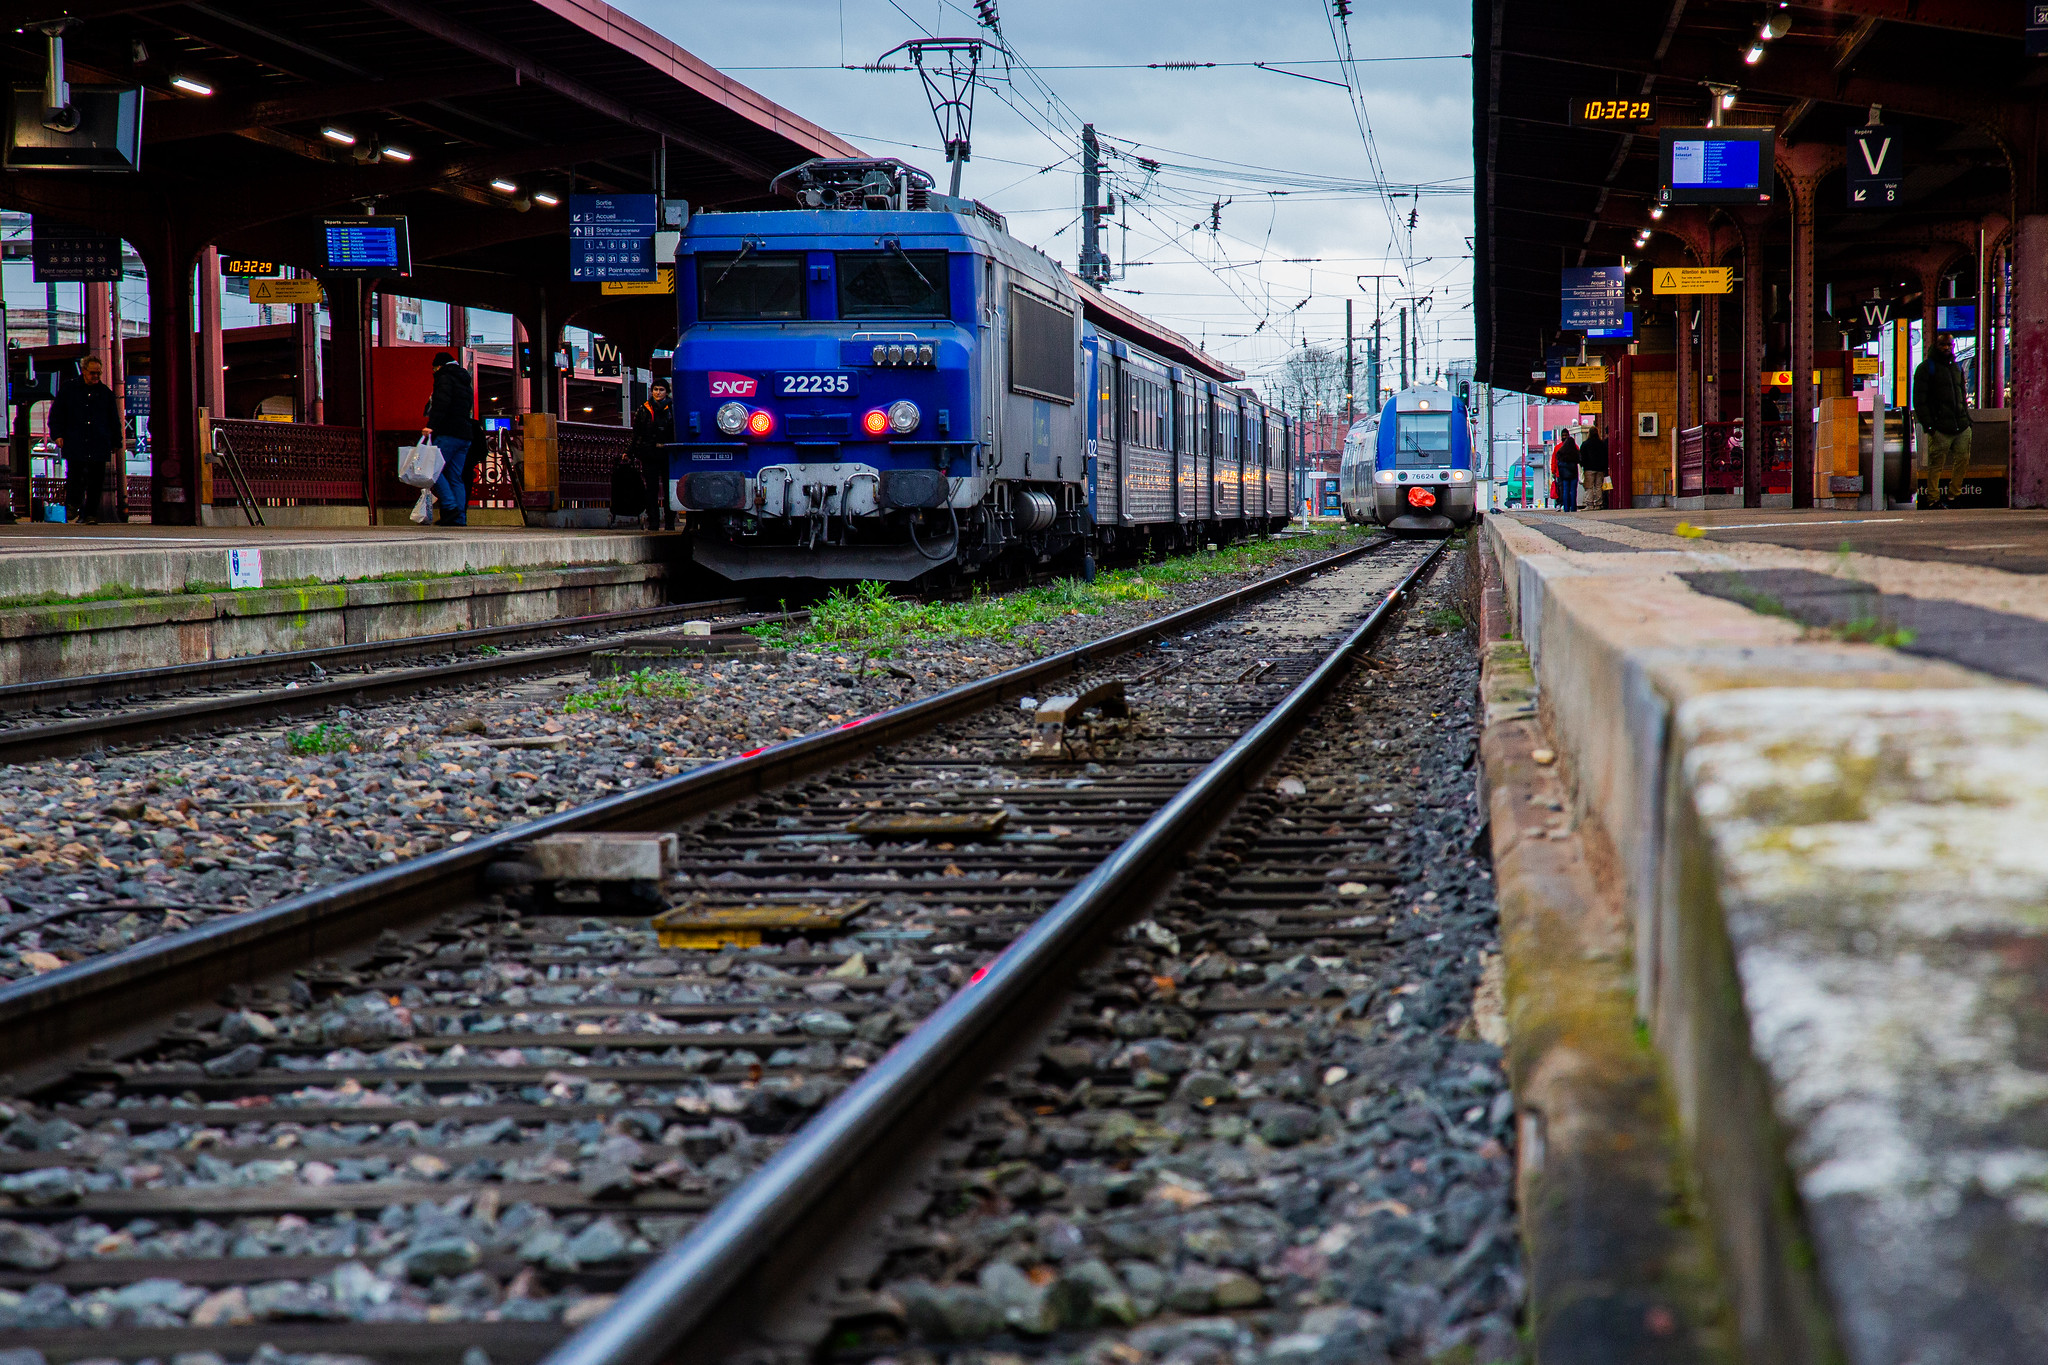 La SNCF menace de licenciement deux employés dénonçant des violences sexuelles